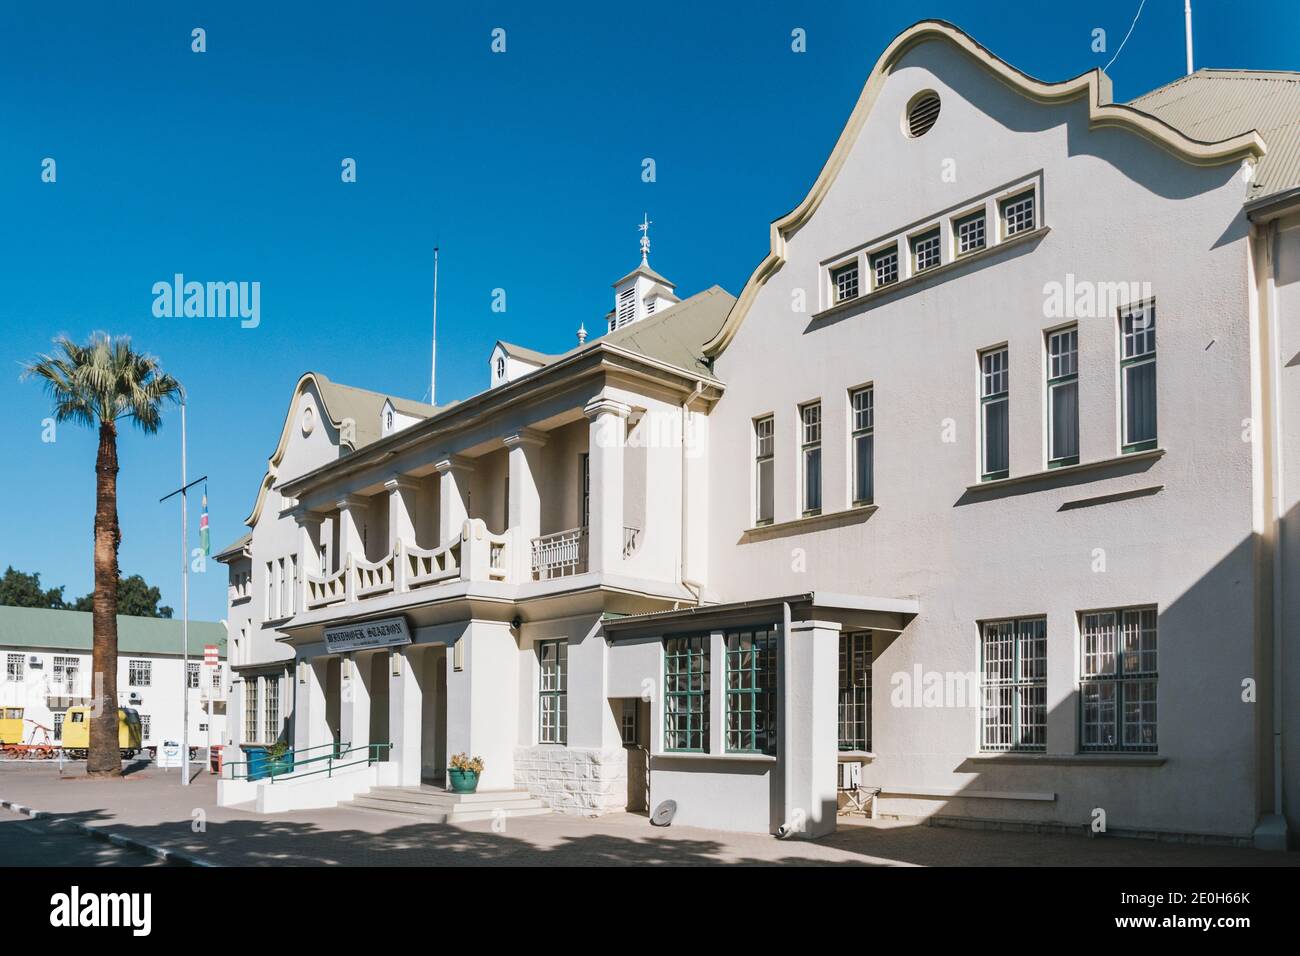 Windhoek, Namibia - Juli 22 2020: Windhoek Bahnhof, Historic Railway Terminal Building der Deutschen Kolonialmacht in Südwestafrika. Stockfoto